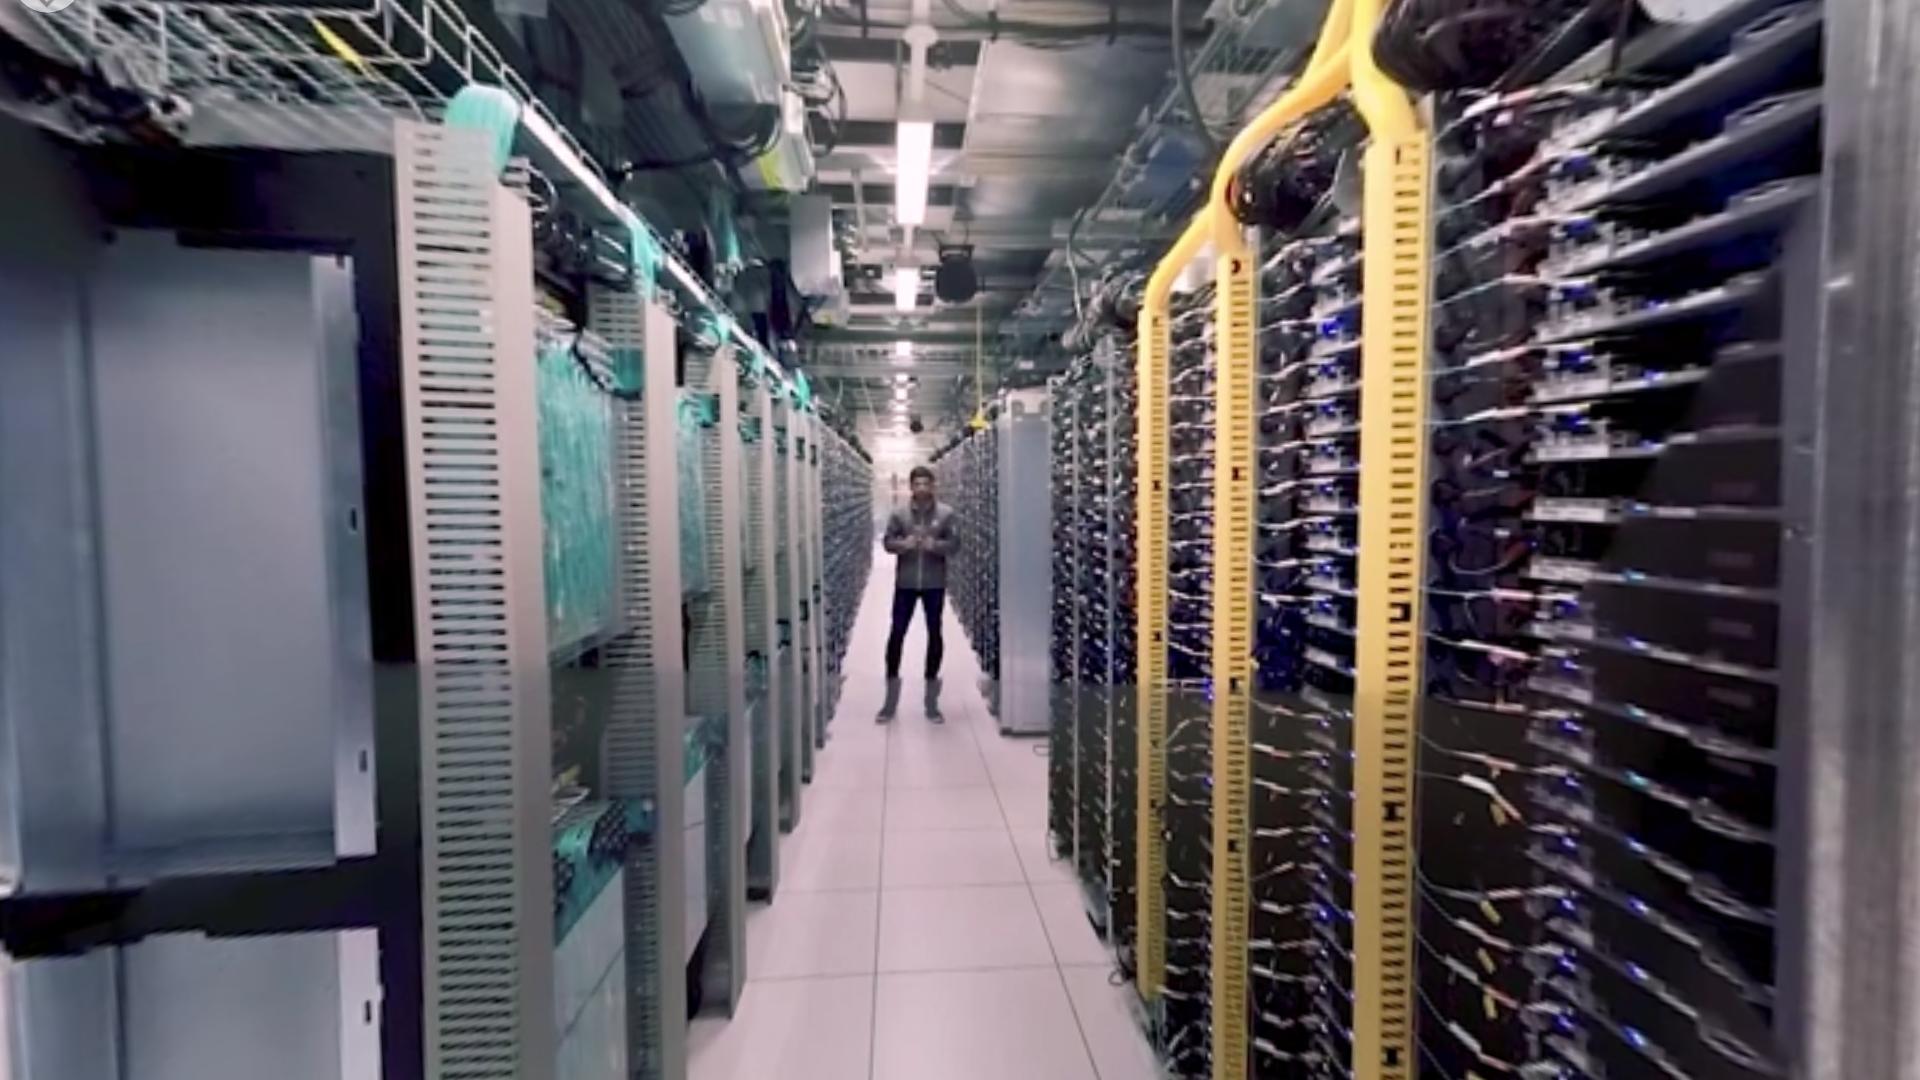 Nå kan du oppleve et av Googles enorme datasentre i 360 grader og 4K